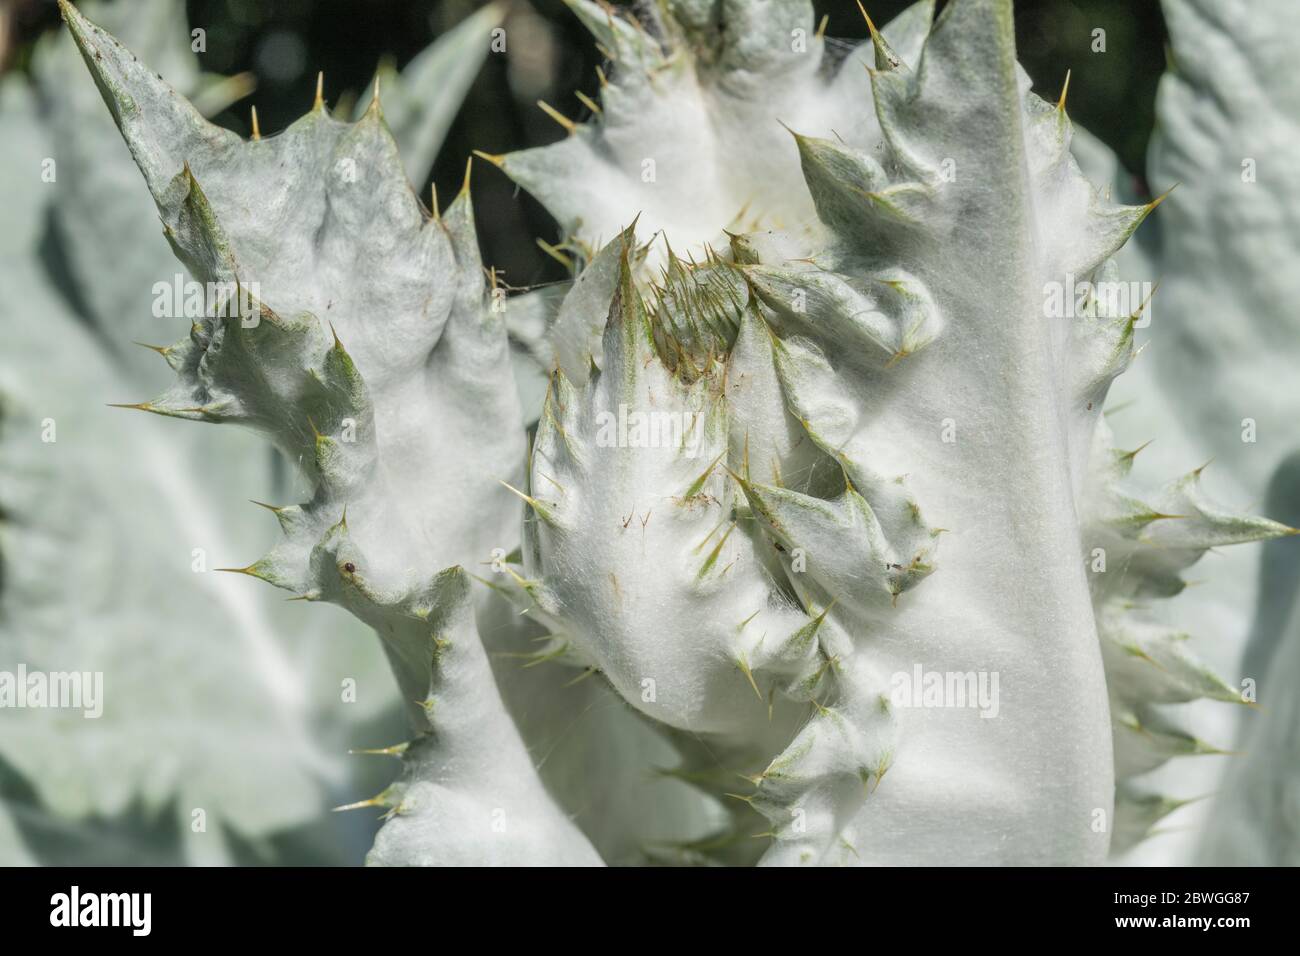 Foglie grandi e prickles taglienti del Thistle di cotone / Onopordum acanthium in sole luminoso. La copertura di lana conferisce un aspetto bianco. Foto Stock